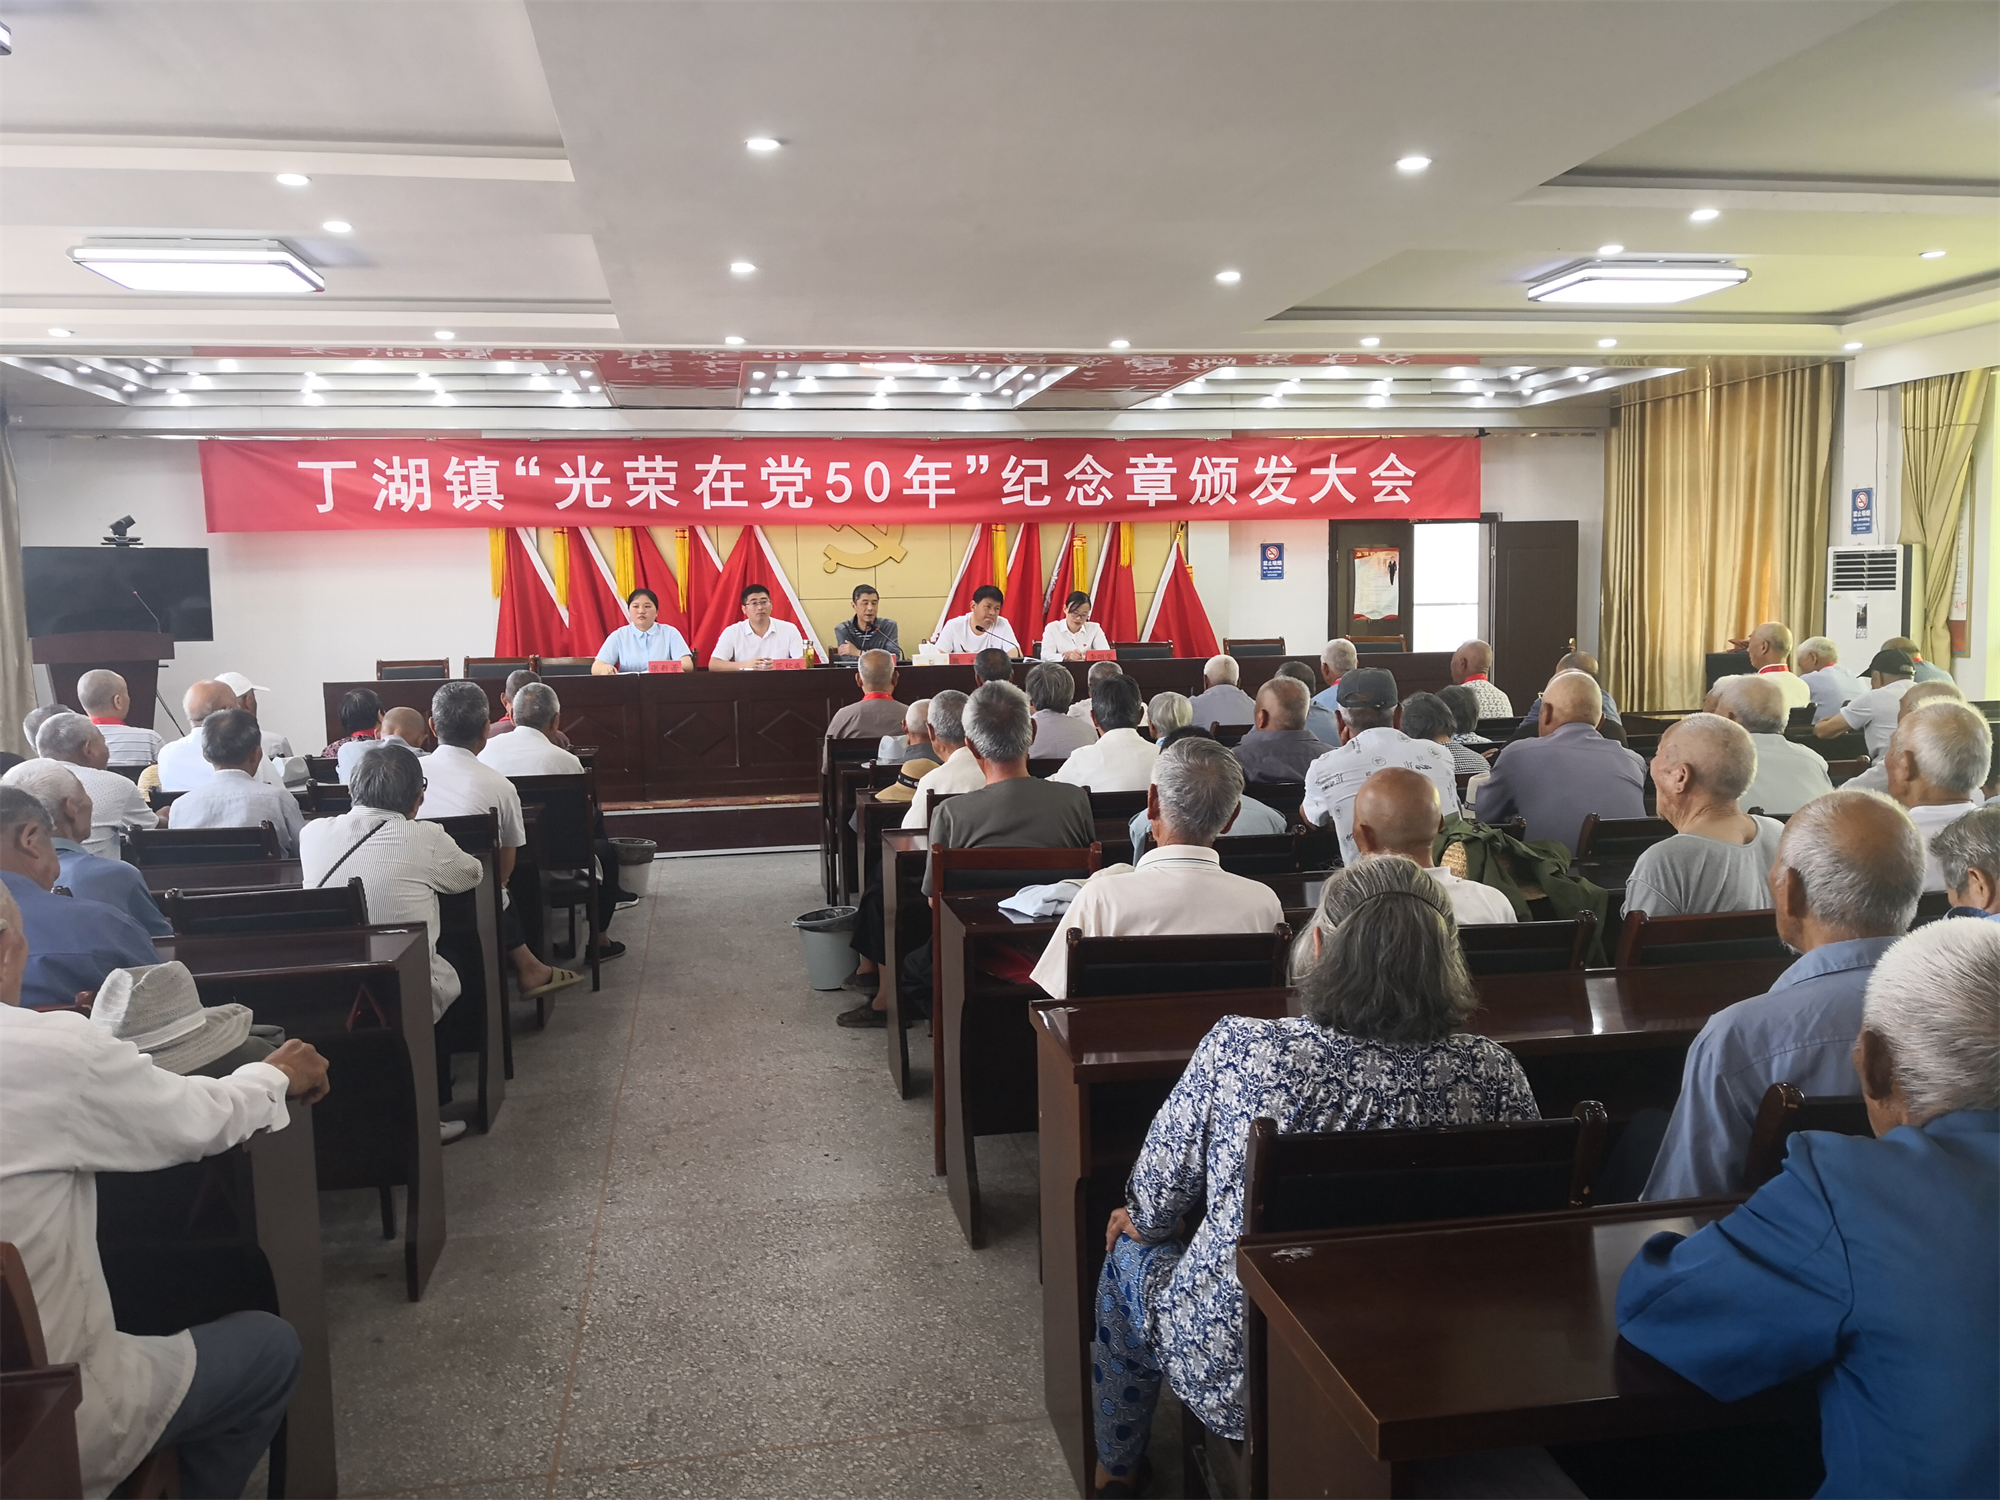 安徽泗县丁湖镇举行光荣在党50年纪念章颁发大会